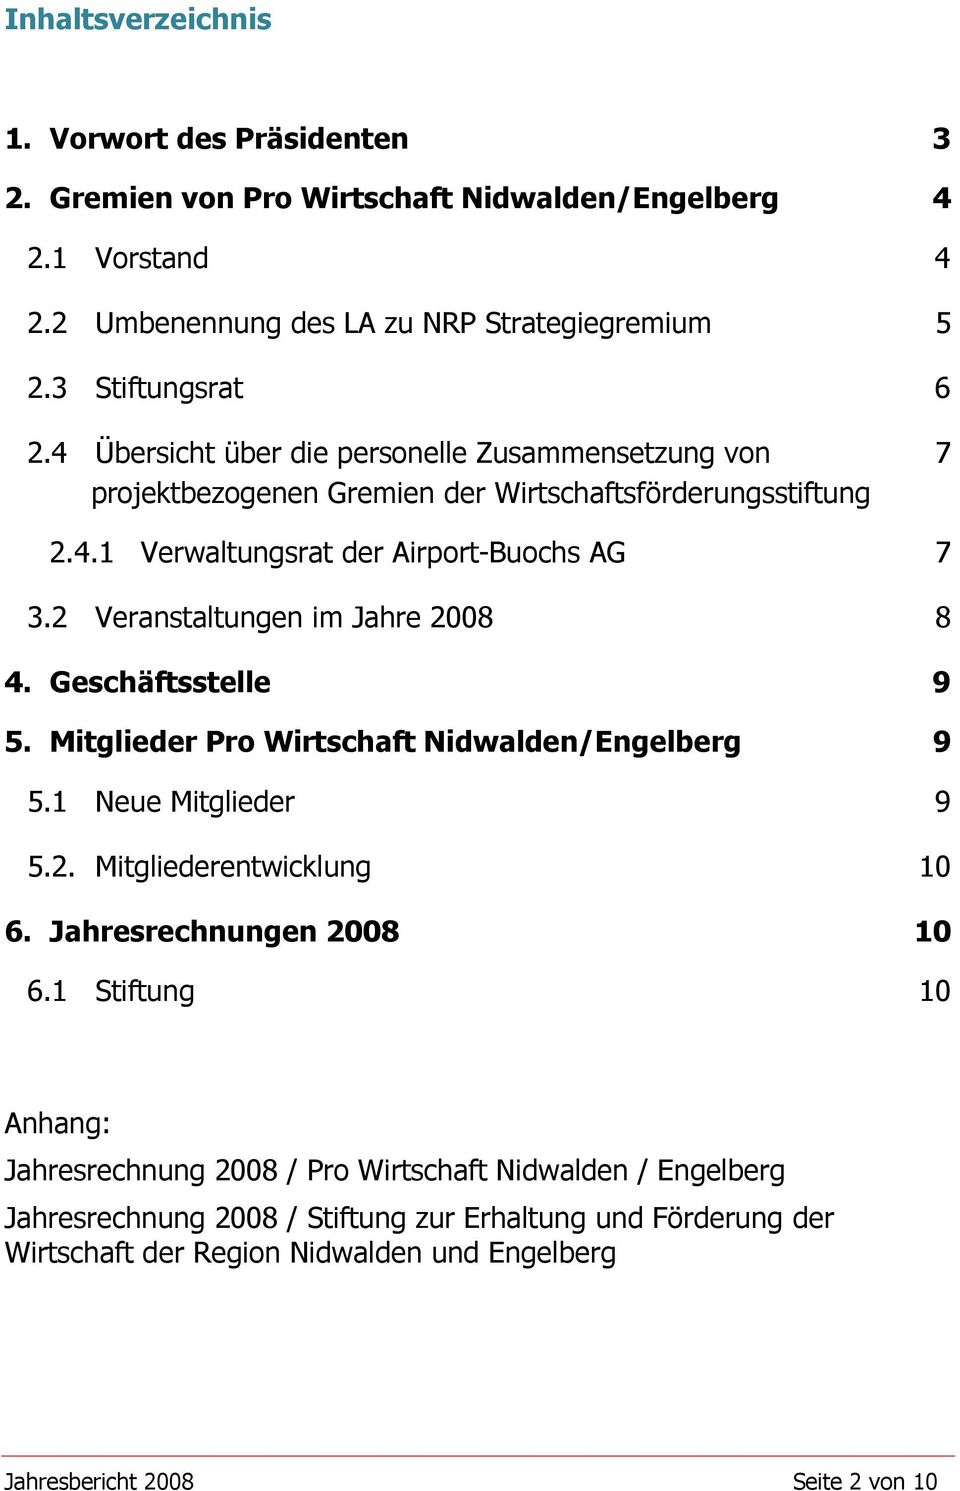 2 Veranstaltungen im Jahre 2008 8 4. Geschäftsstelle 9 5. Mitglieder Pro Wirtschaft Nidwalden/Engelberg 9 5.1 Neue Mitglieder 9 5.2. Mitgliederentwicklung 10 6. Jahresrechnungen 2008 10 6.